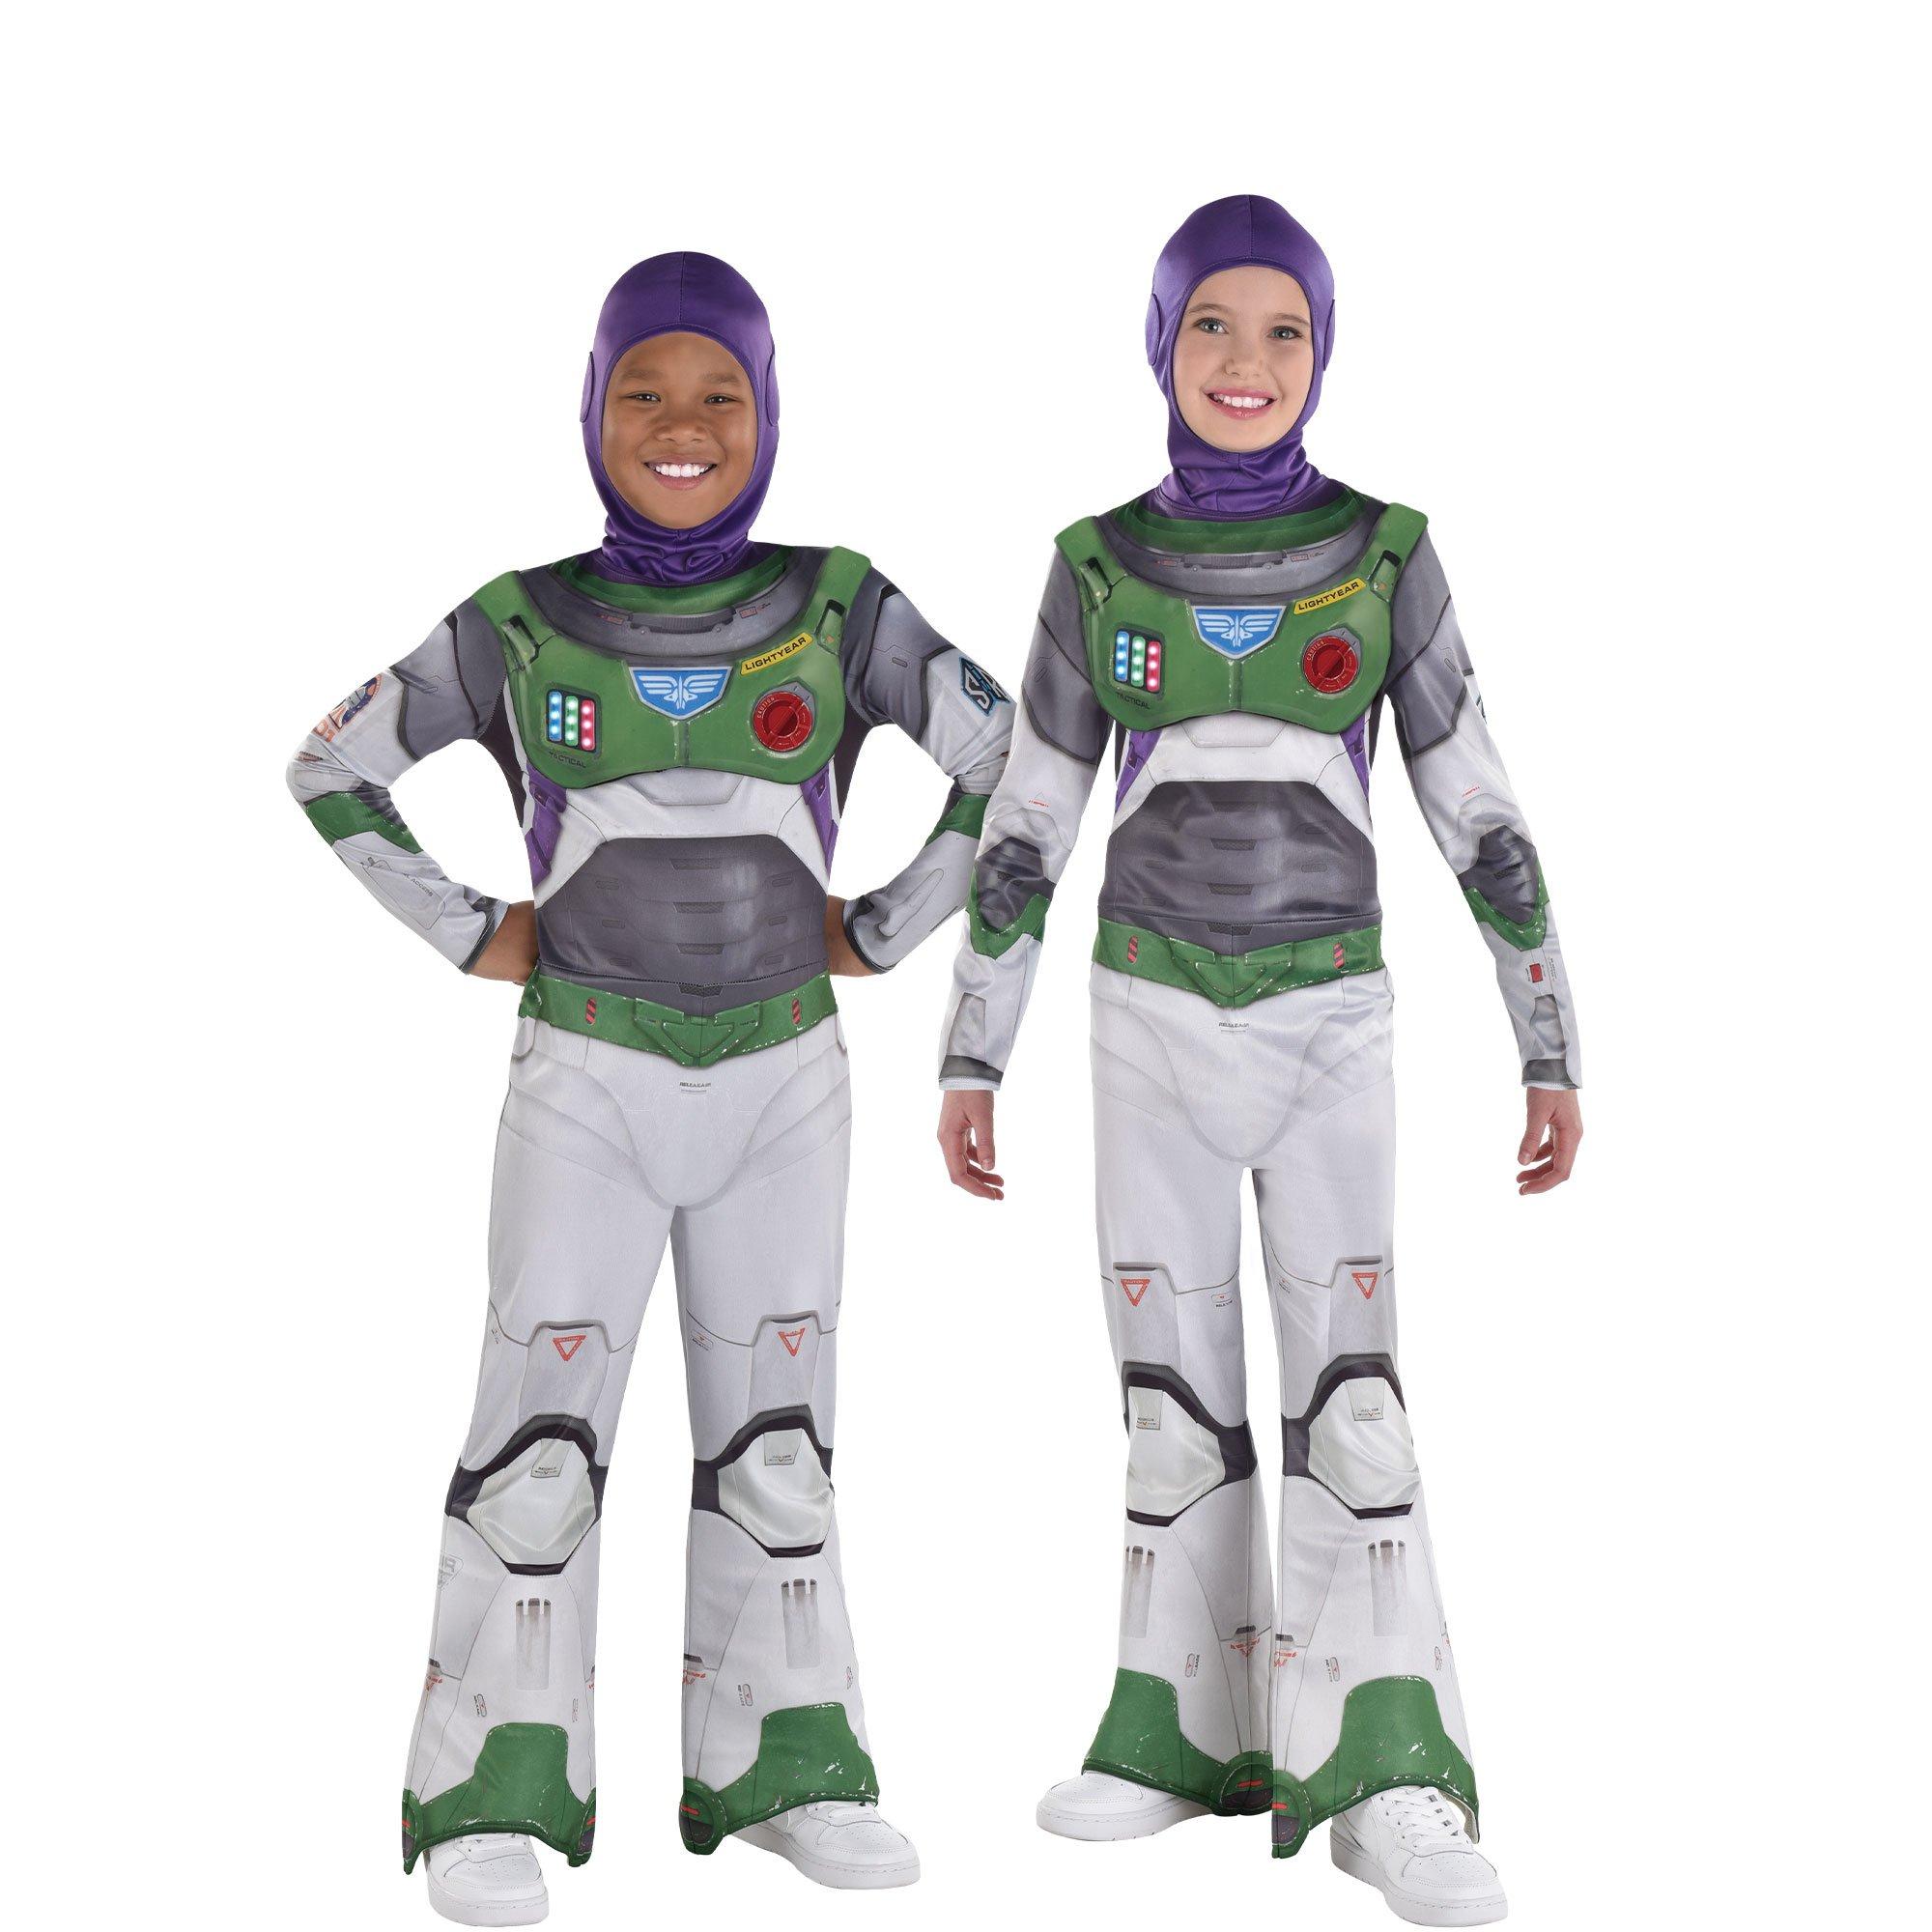 Kids' Light-Up Space Ranger Alpha Buzz Lightyear Costume - Lightyear